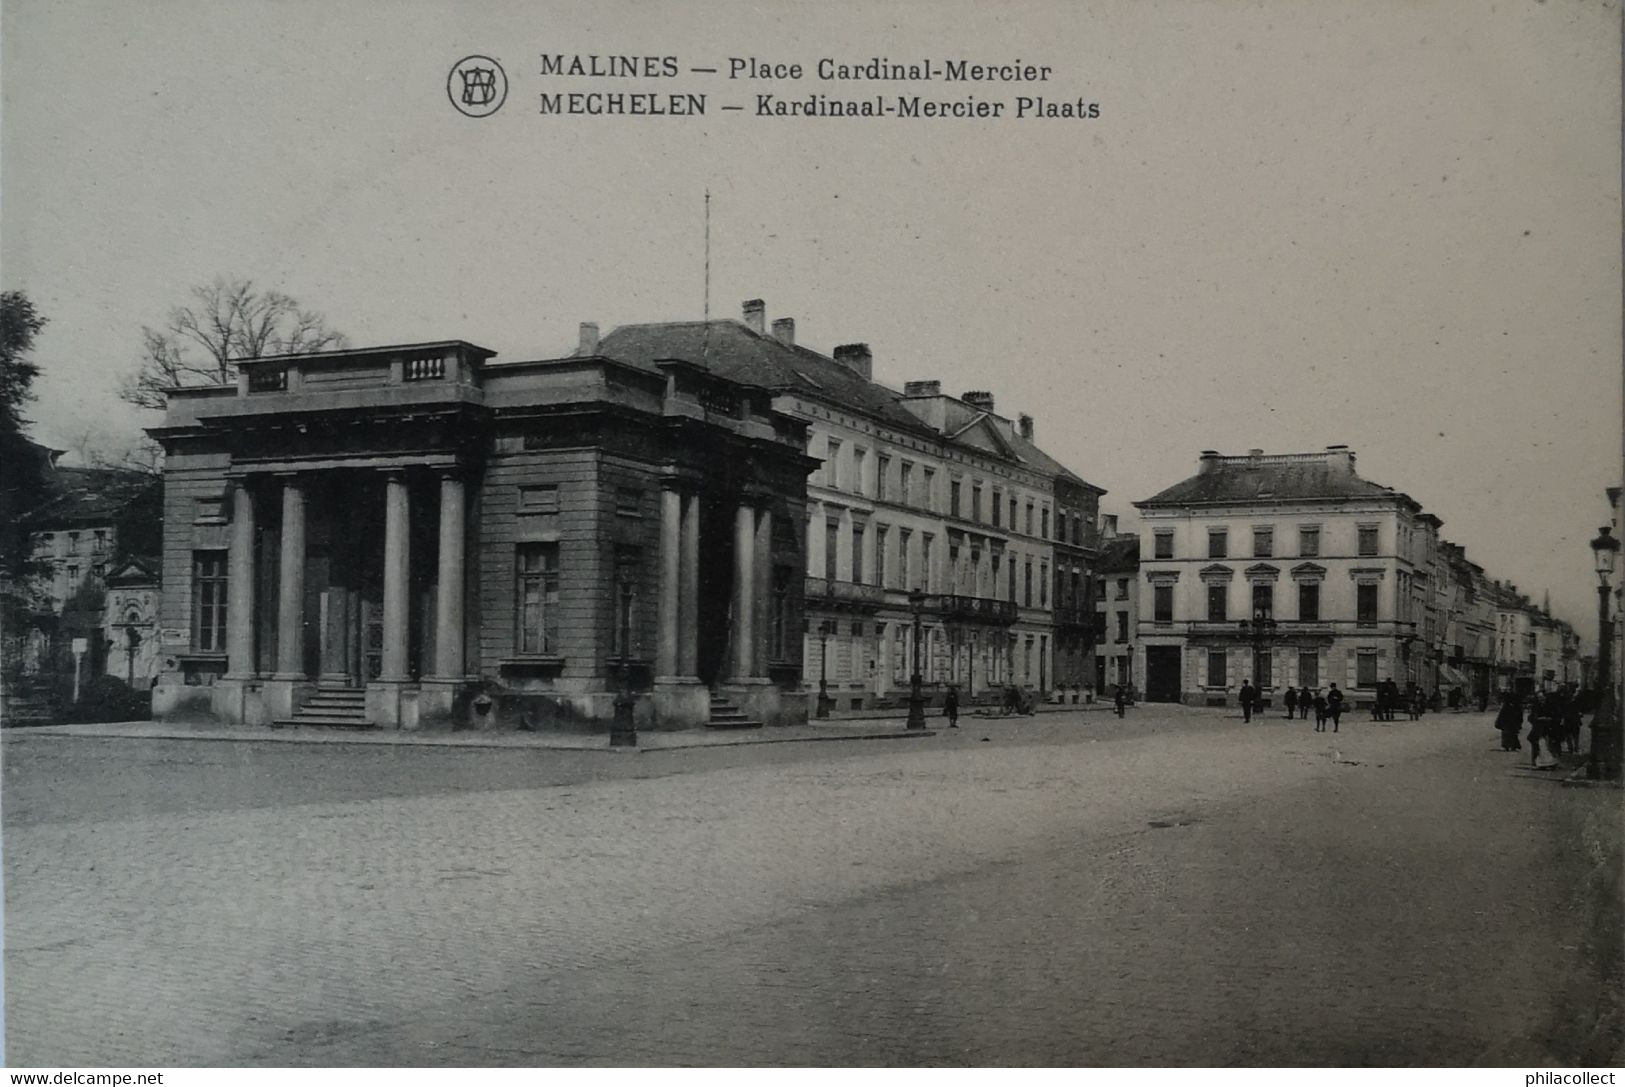 Mechelen - Malines / Place Cardinal Mercier 19?? - Mechelen